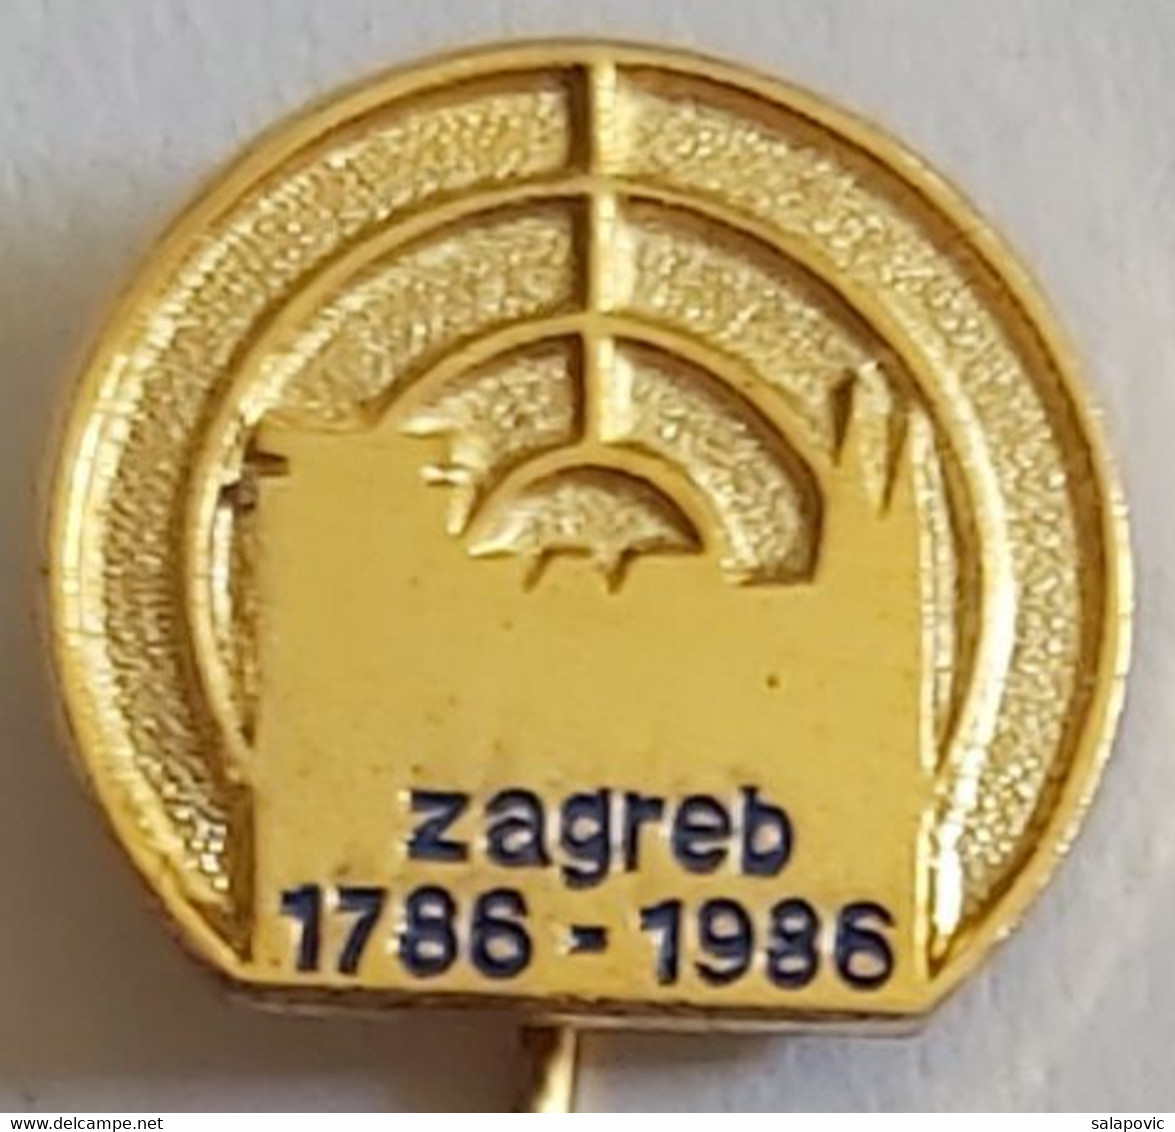 Zagreb 1786 - 1886 Croatia Archery Zagreb Shooting Association PIN A6/2 - Bogenschiessen